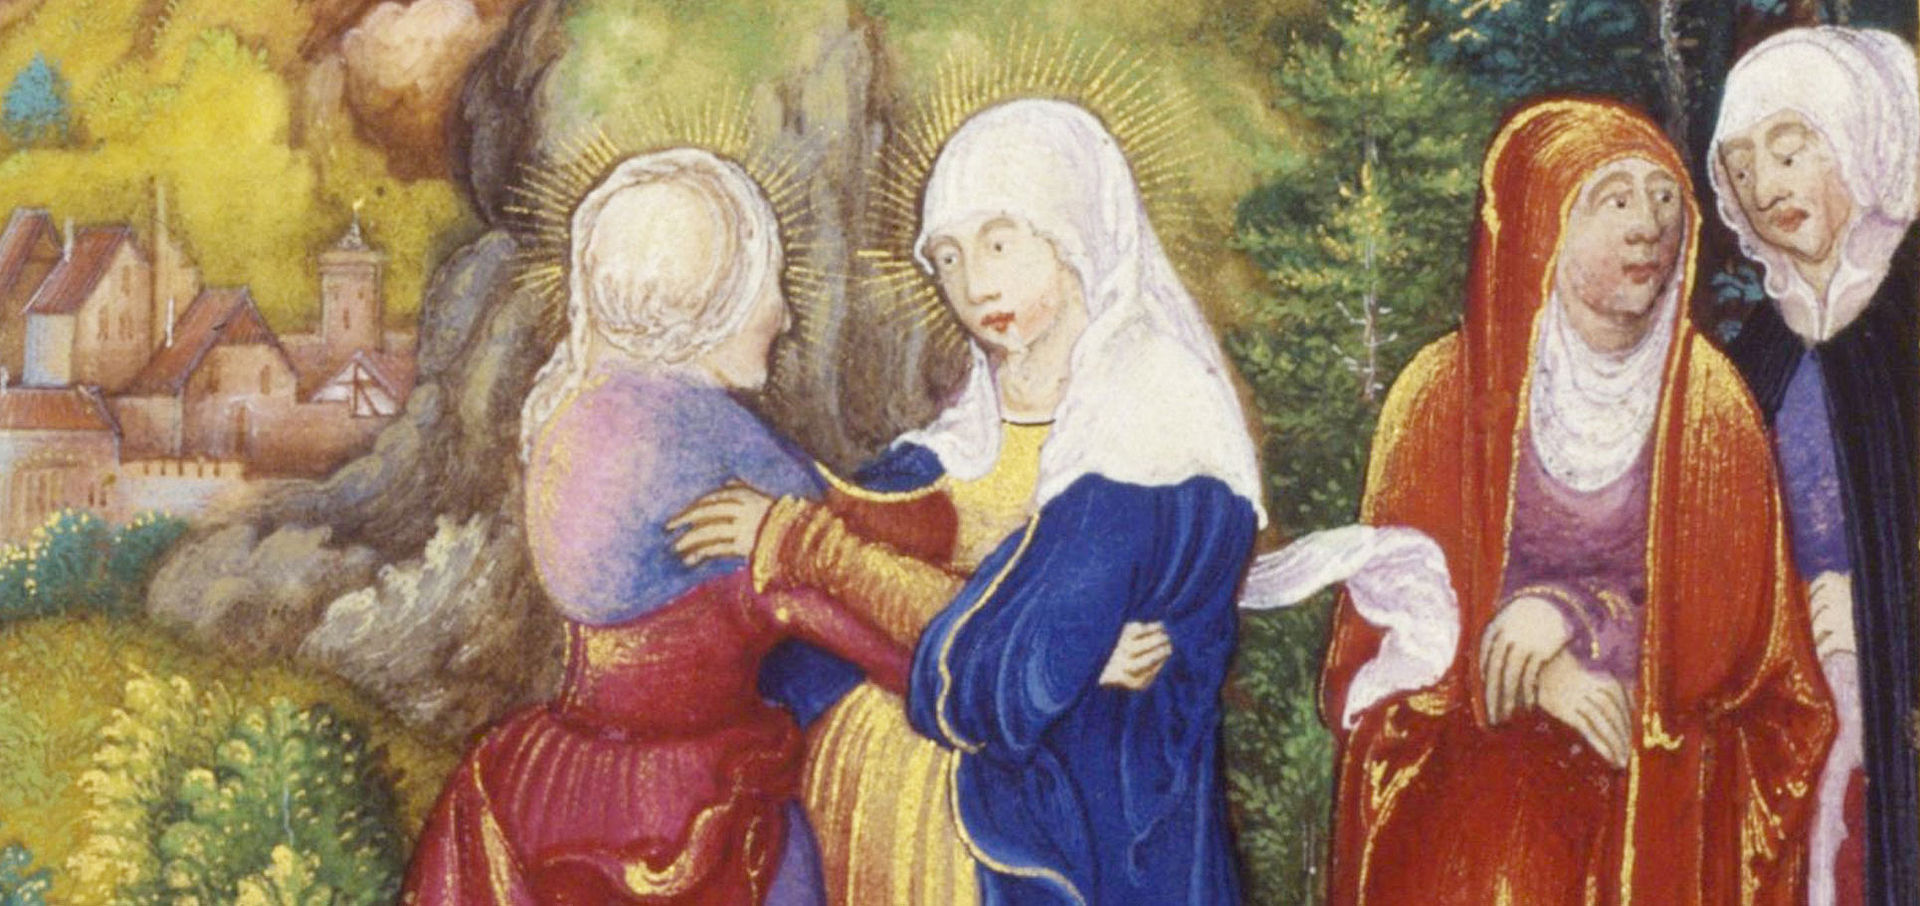 Ausschnitt aus Glockendons Gebetbuch. 2 Frauen, mittelalterlich gekleidet, halten sich an den Händen